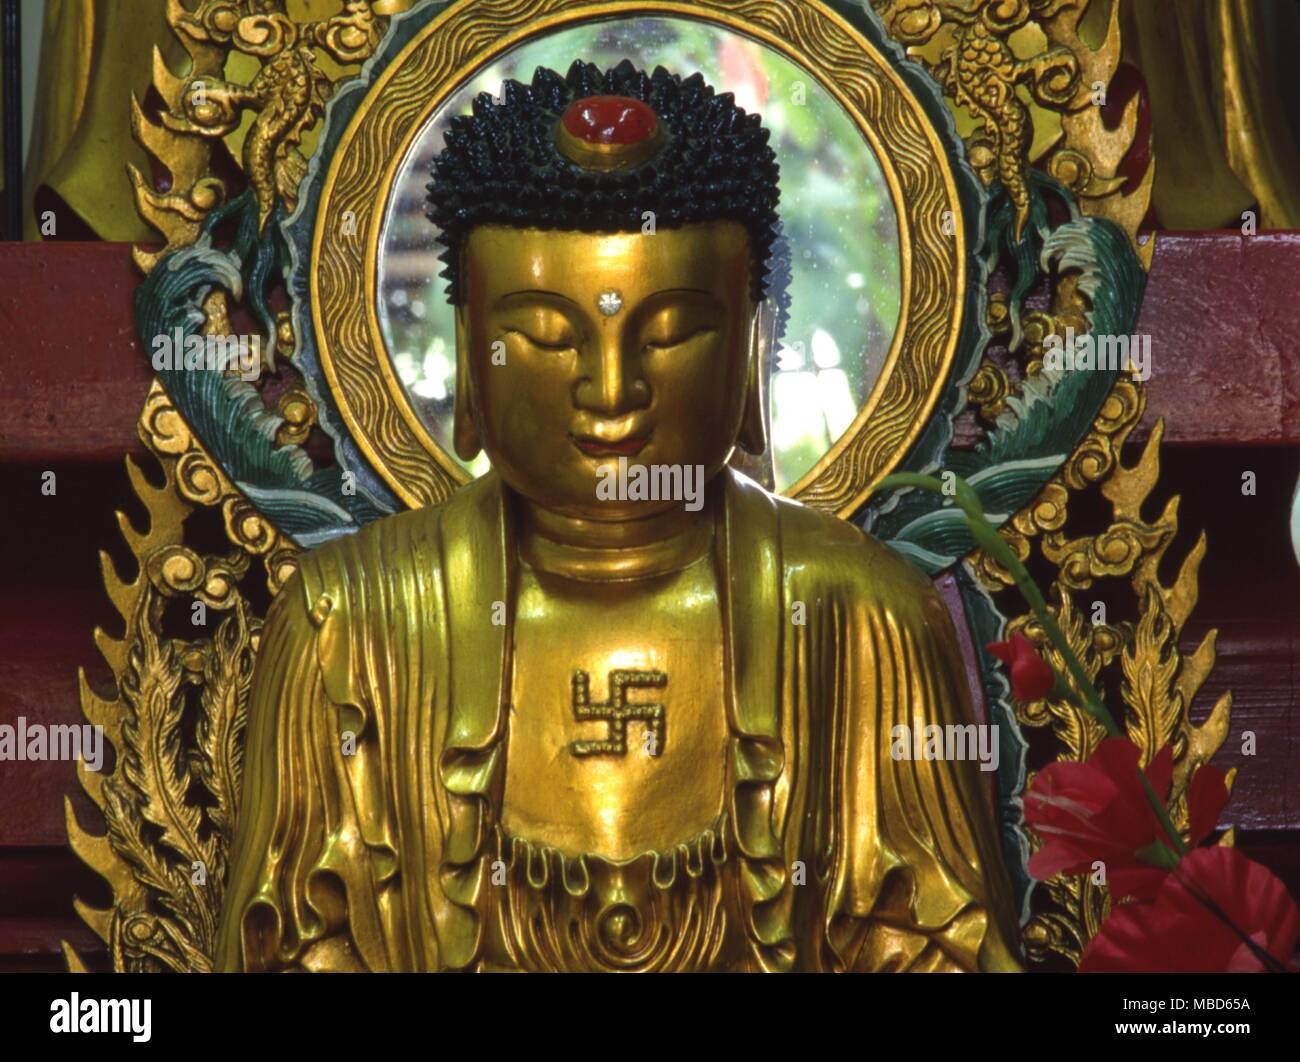 Lo specchio dietro la testa del Buddha è destinato a simboleggiare l'aura, ma riflette anche la ' maya ' del mondo, compreso quello contemplando il Buddha. Nota Il simbolo dell'sauwastika e il ' terzo occhio ', Ajna Foto Stock